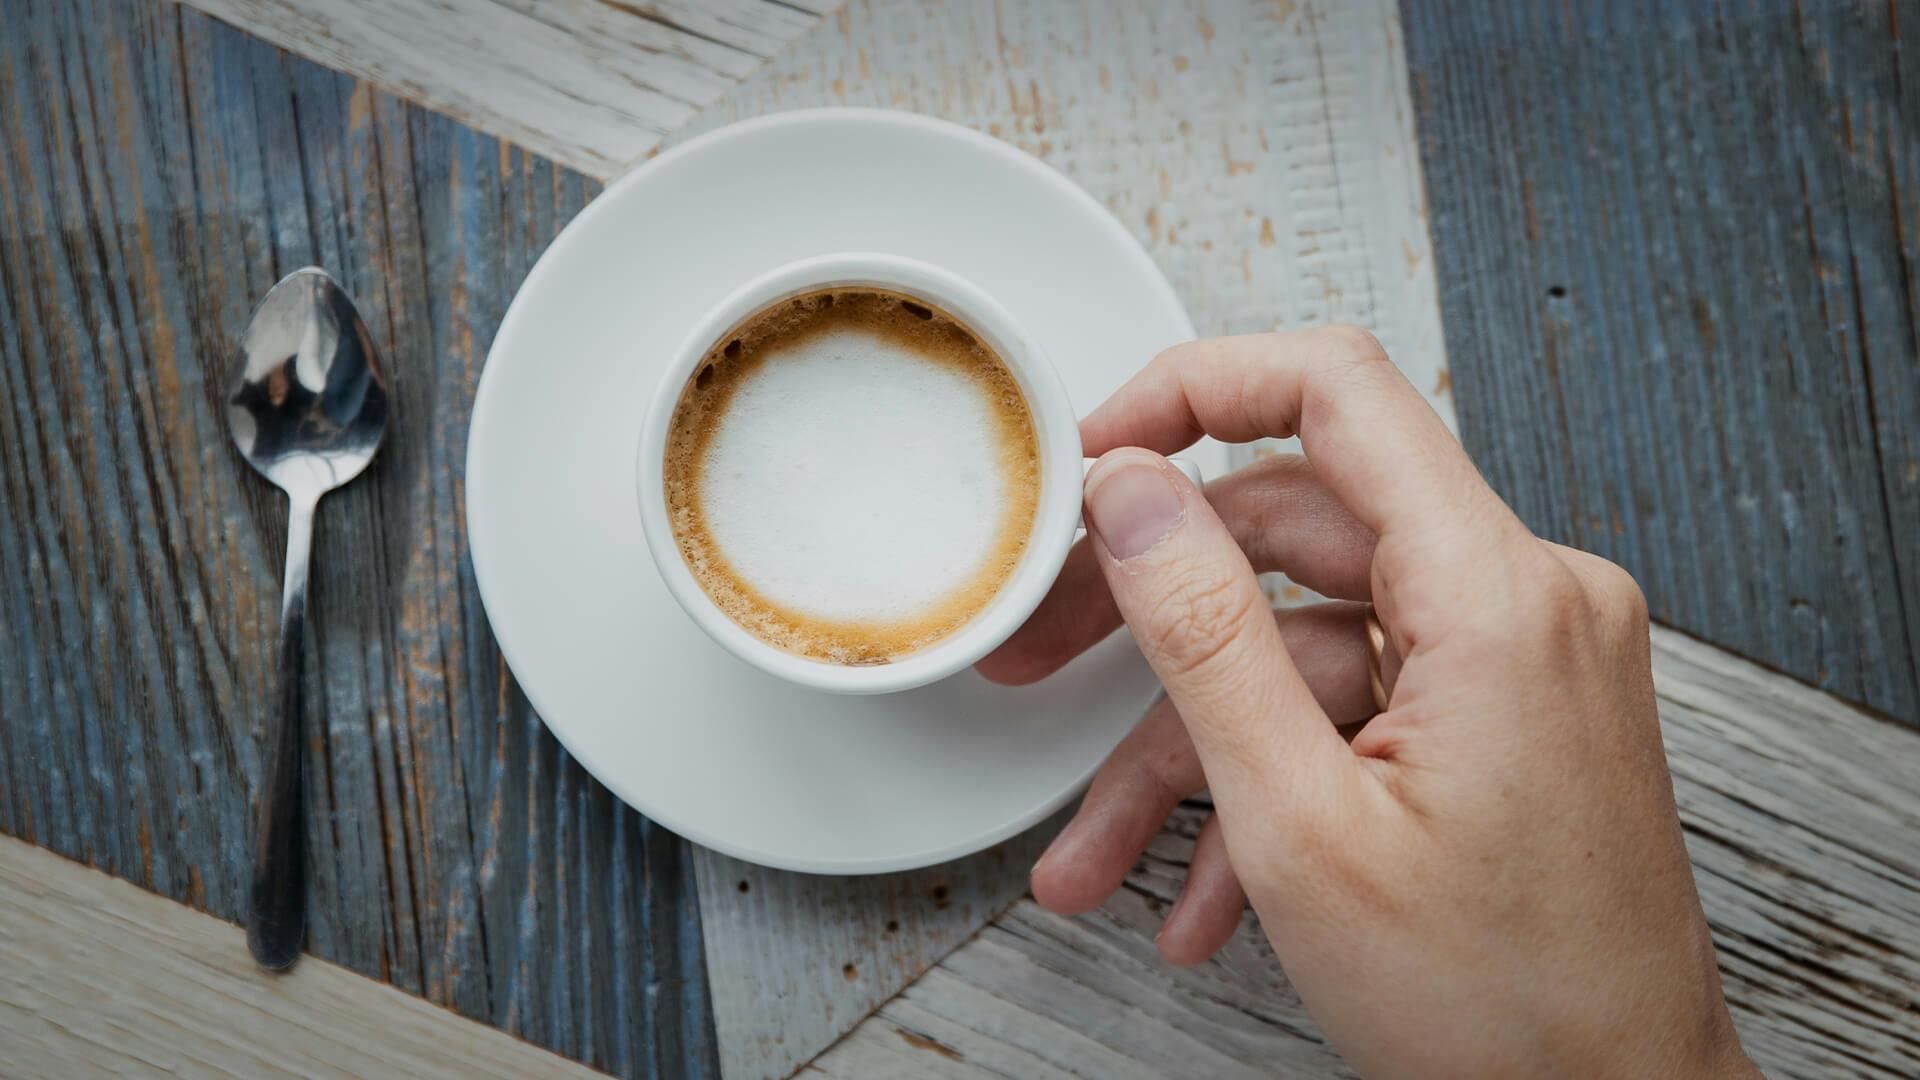 Löffel neben einer gefüllten Kaffee-Tasse mit Cappuccino, welche in einer Hand gehalten wird